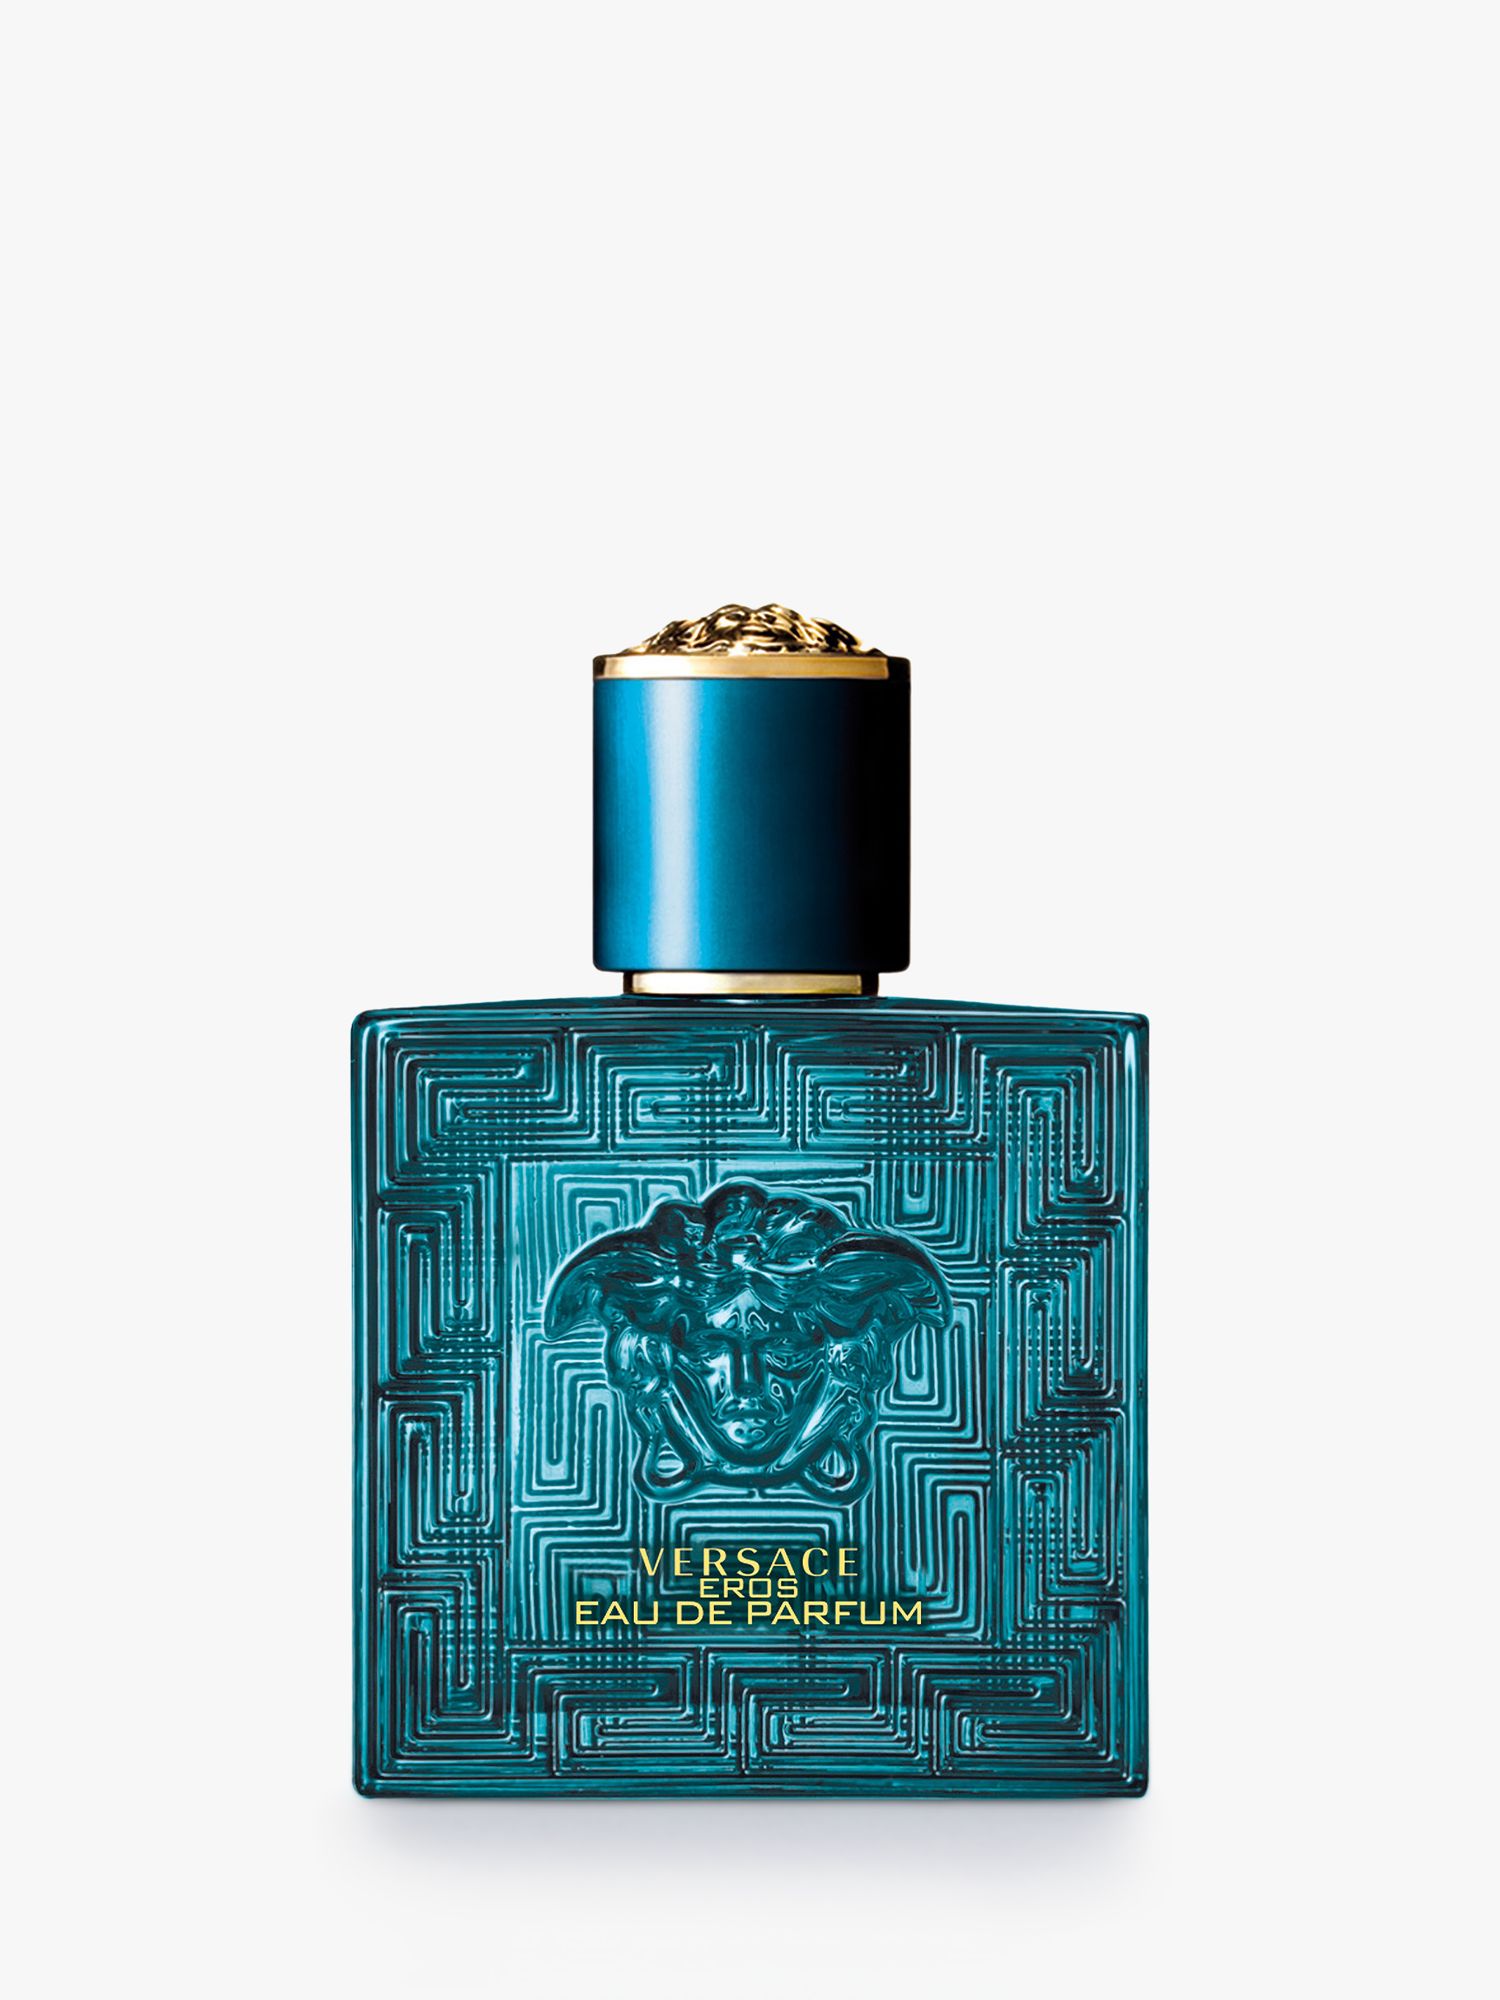 Versace Eros Eau de Parfum, 50ml at John Lewis & Partners